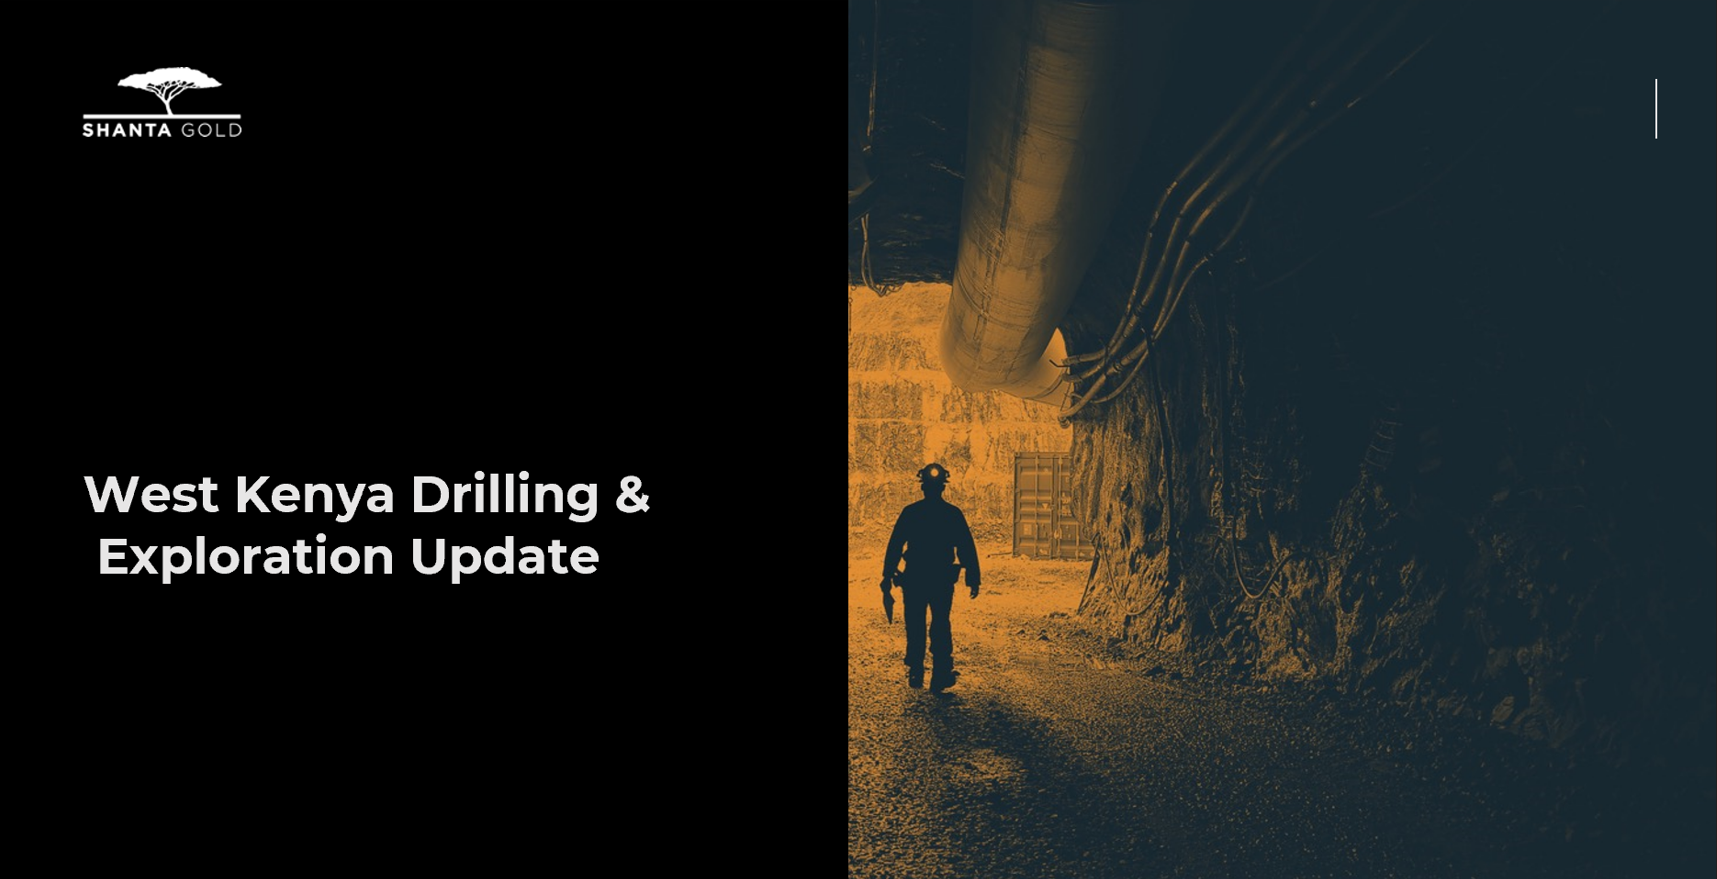 West Kenya Phase 2 High Grade Drilling Update - 17 Nov 22